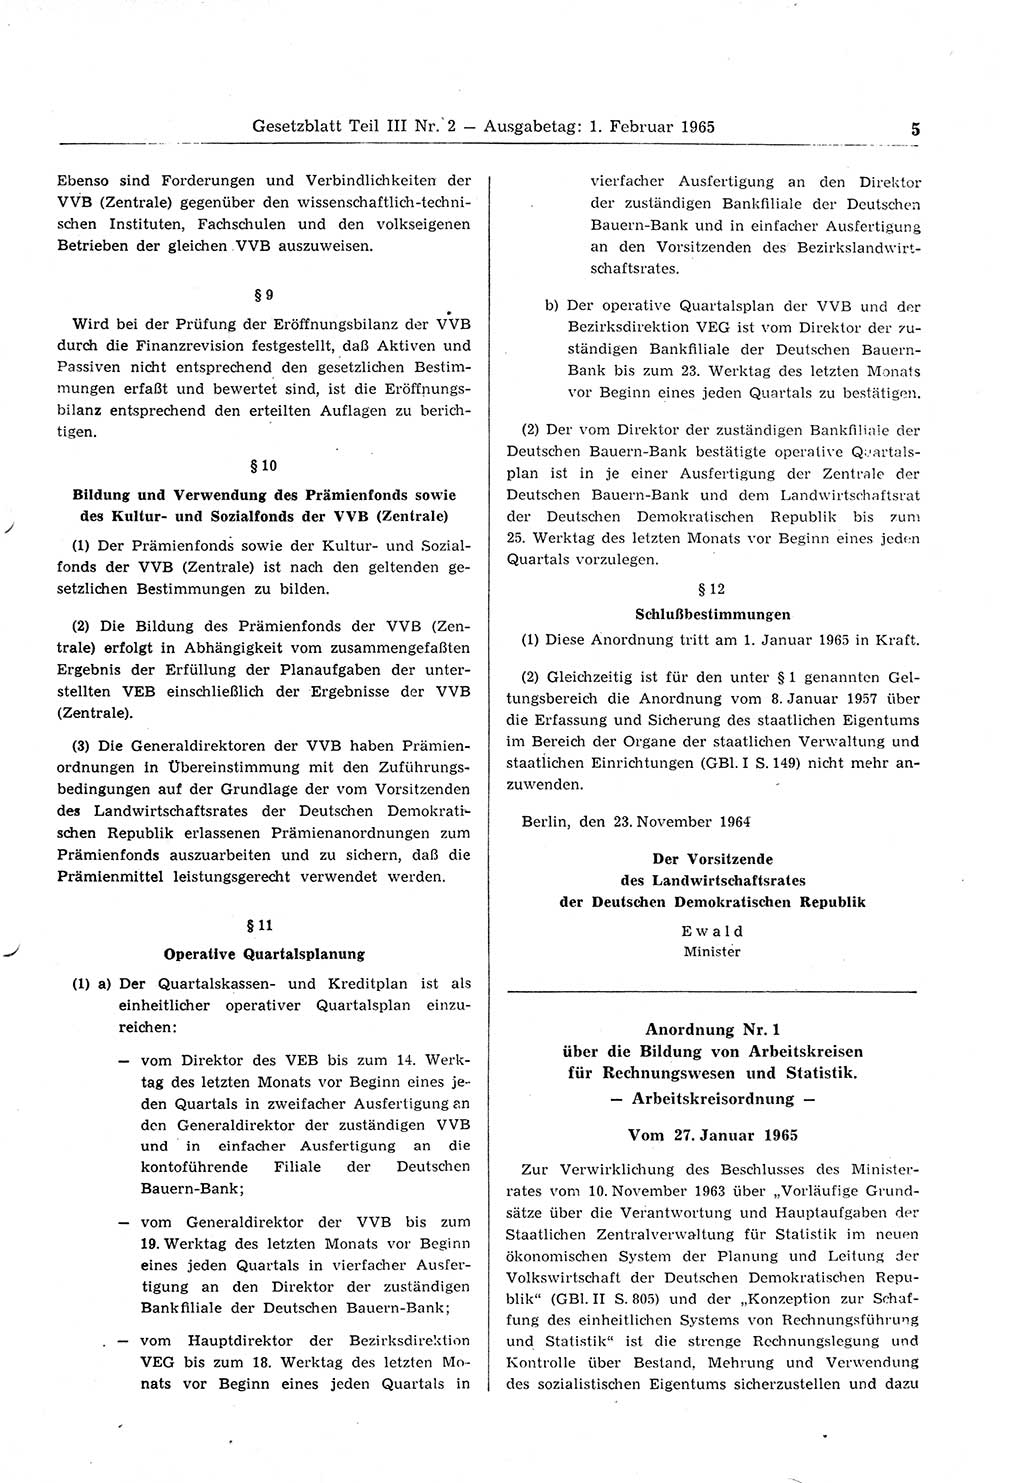 Gesetzblatt (GBl.) der Deutschen Demokratischen Republik (DDR) Teil ⅠⅠⅠ 1965, Seite 5 (GBl. DDR ⅠⅠⅠ 1965, S. 5)